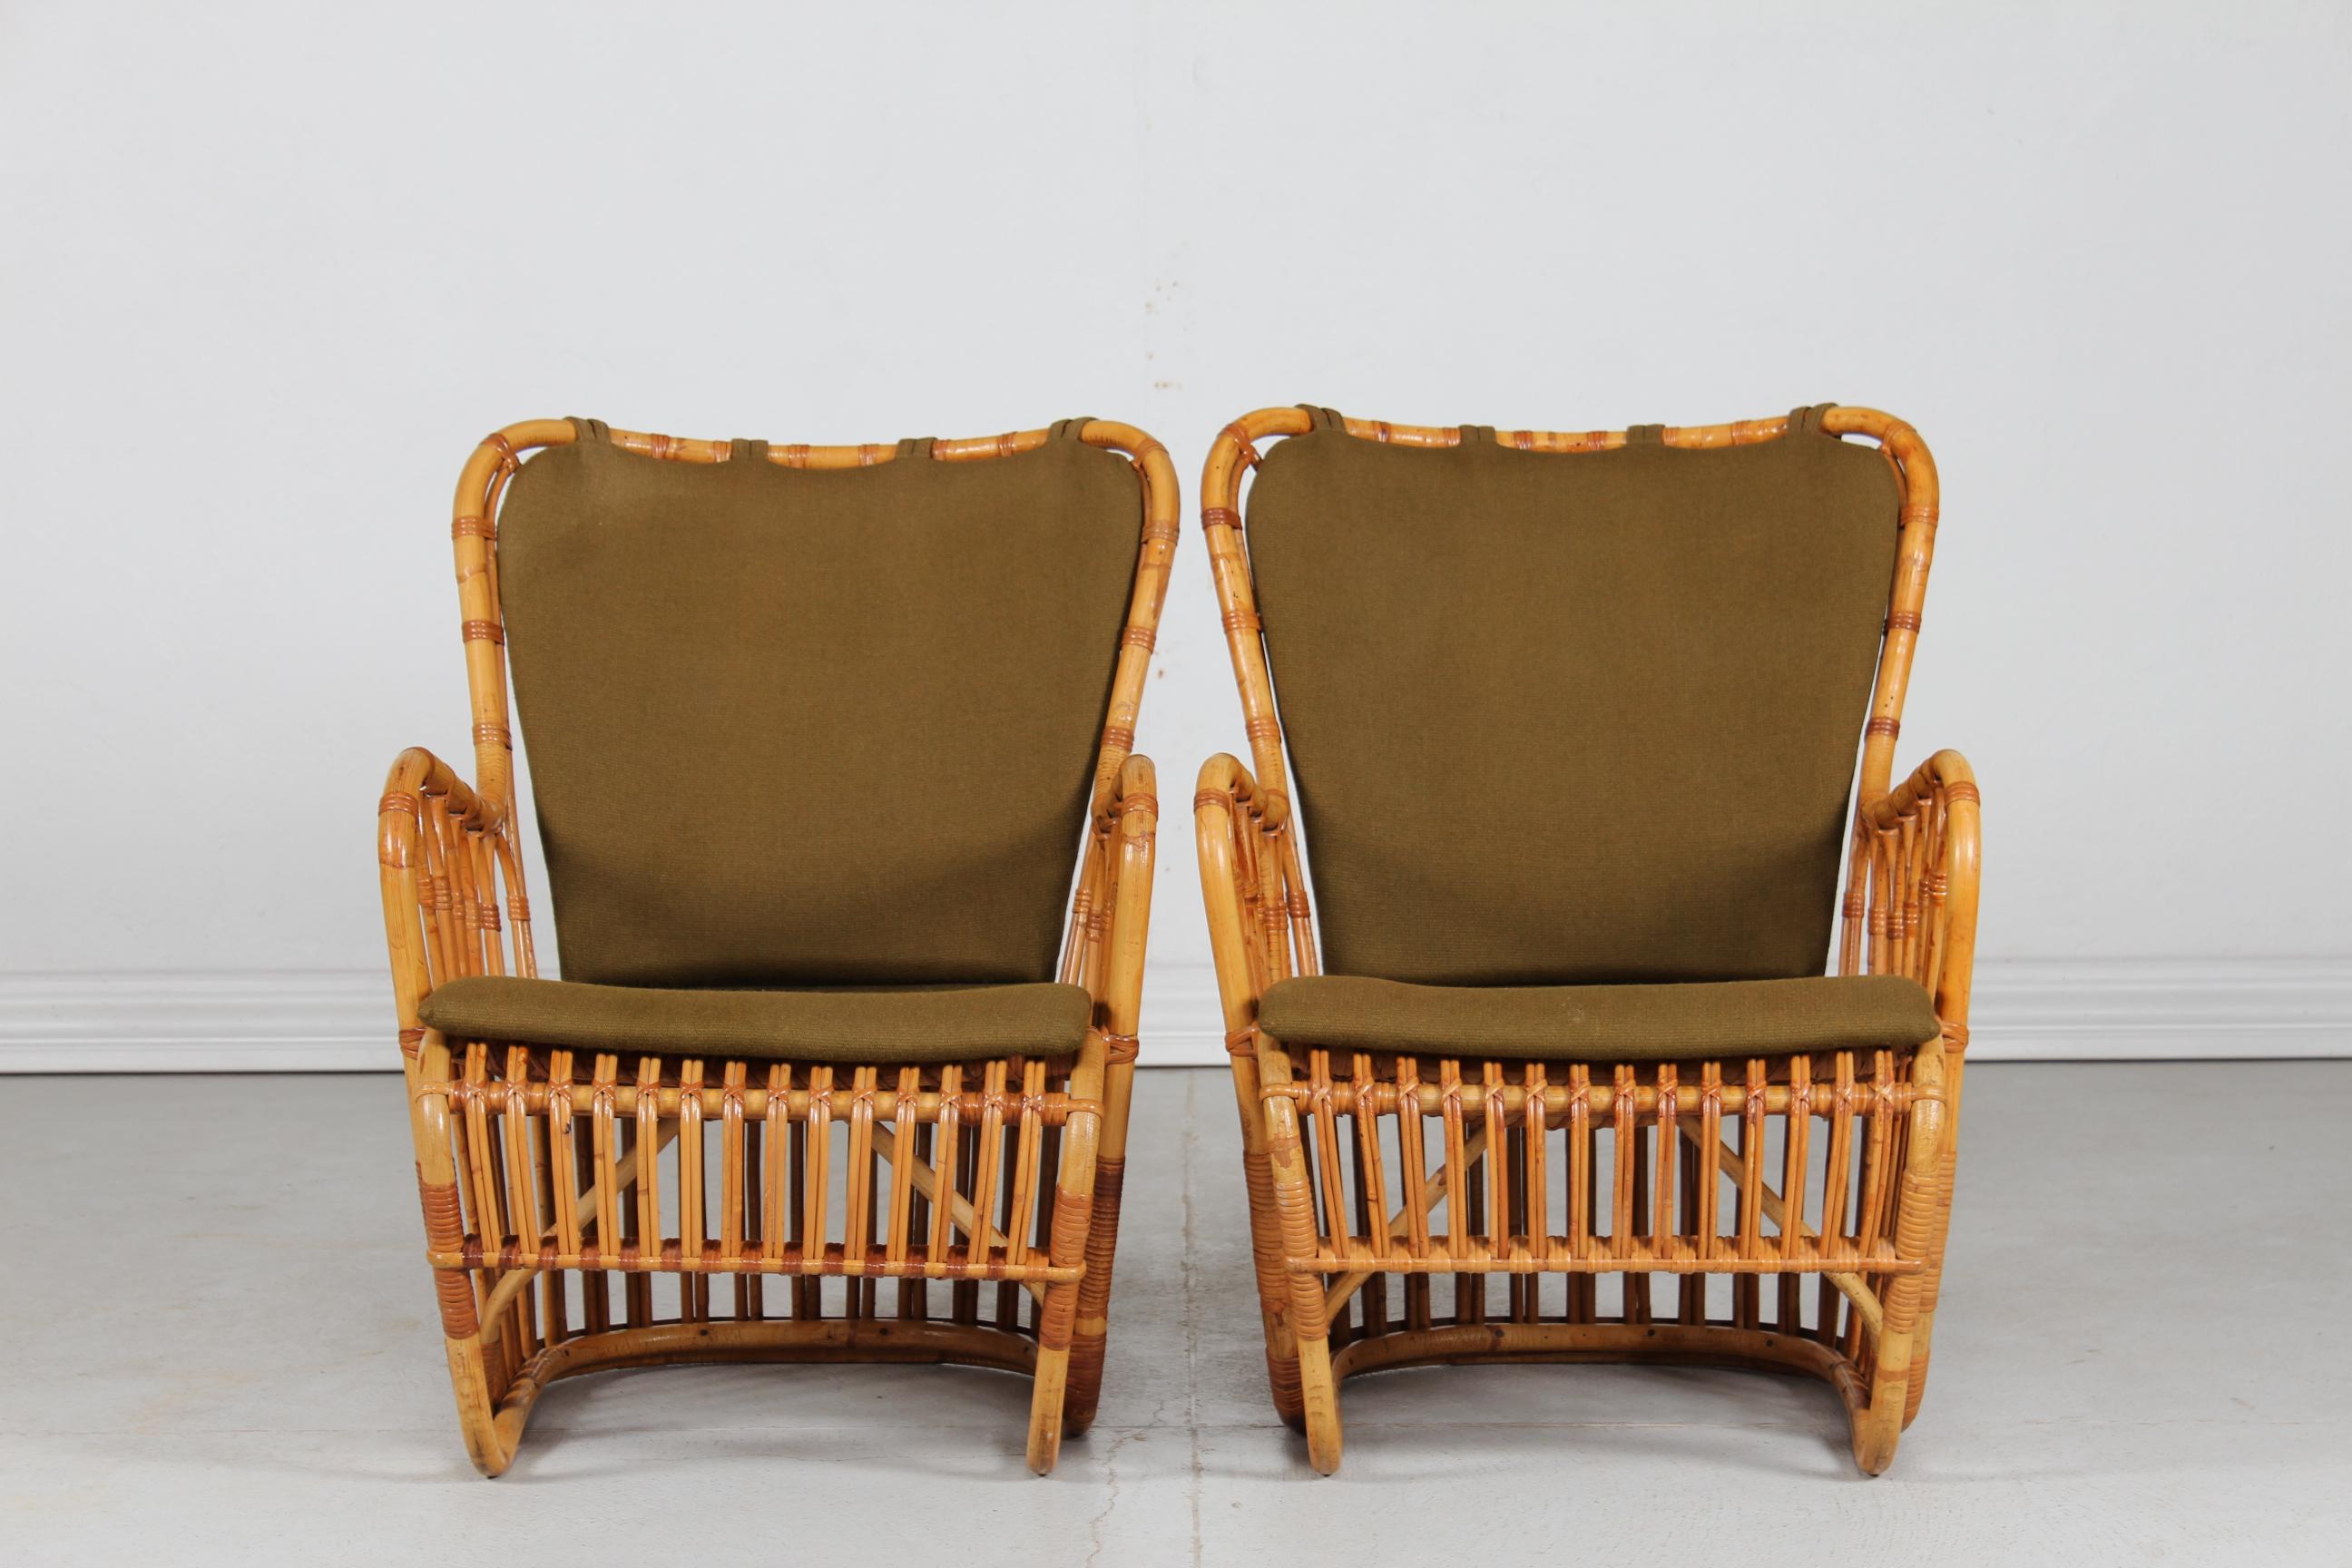 Tove Kindt-Larsen (1906-94), ein Paar Vintage-Bambussessel Modell Tulip aus dem Jahr 1937.
Diese Stühle wurden in den 1950er Jahren von R. Wengler in Kopenhagen, Dänemark, hergestellt.
Kissen mit grüner Polsterung.

Maße: Höhe 78 cm
Sitzhöhe 35